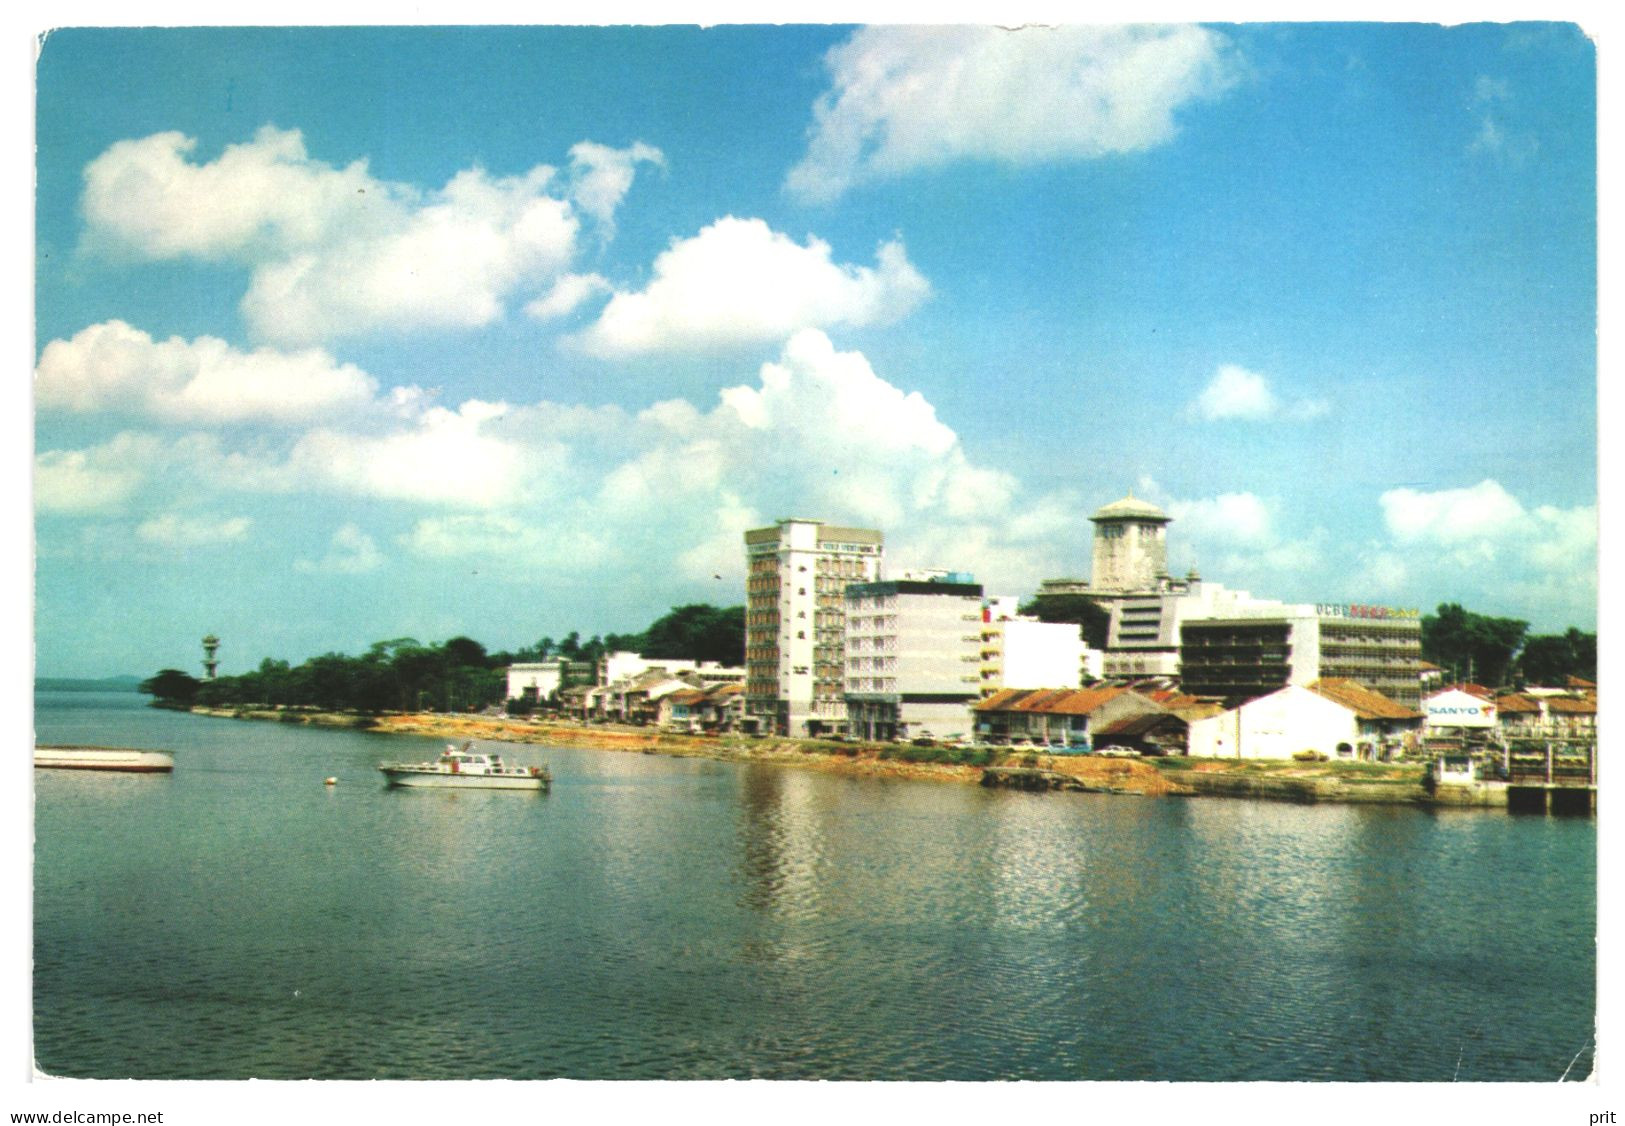 OCBC Building, Johore Bahru Water-front Jahore Strait Singapore 1970s Unused Postcard. Publisher S.W.Singapore - Singapore